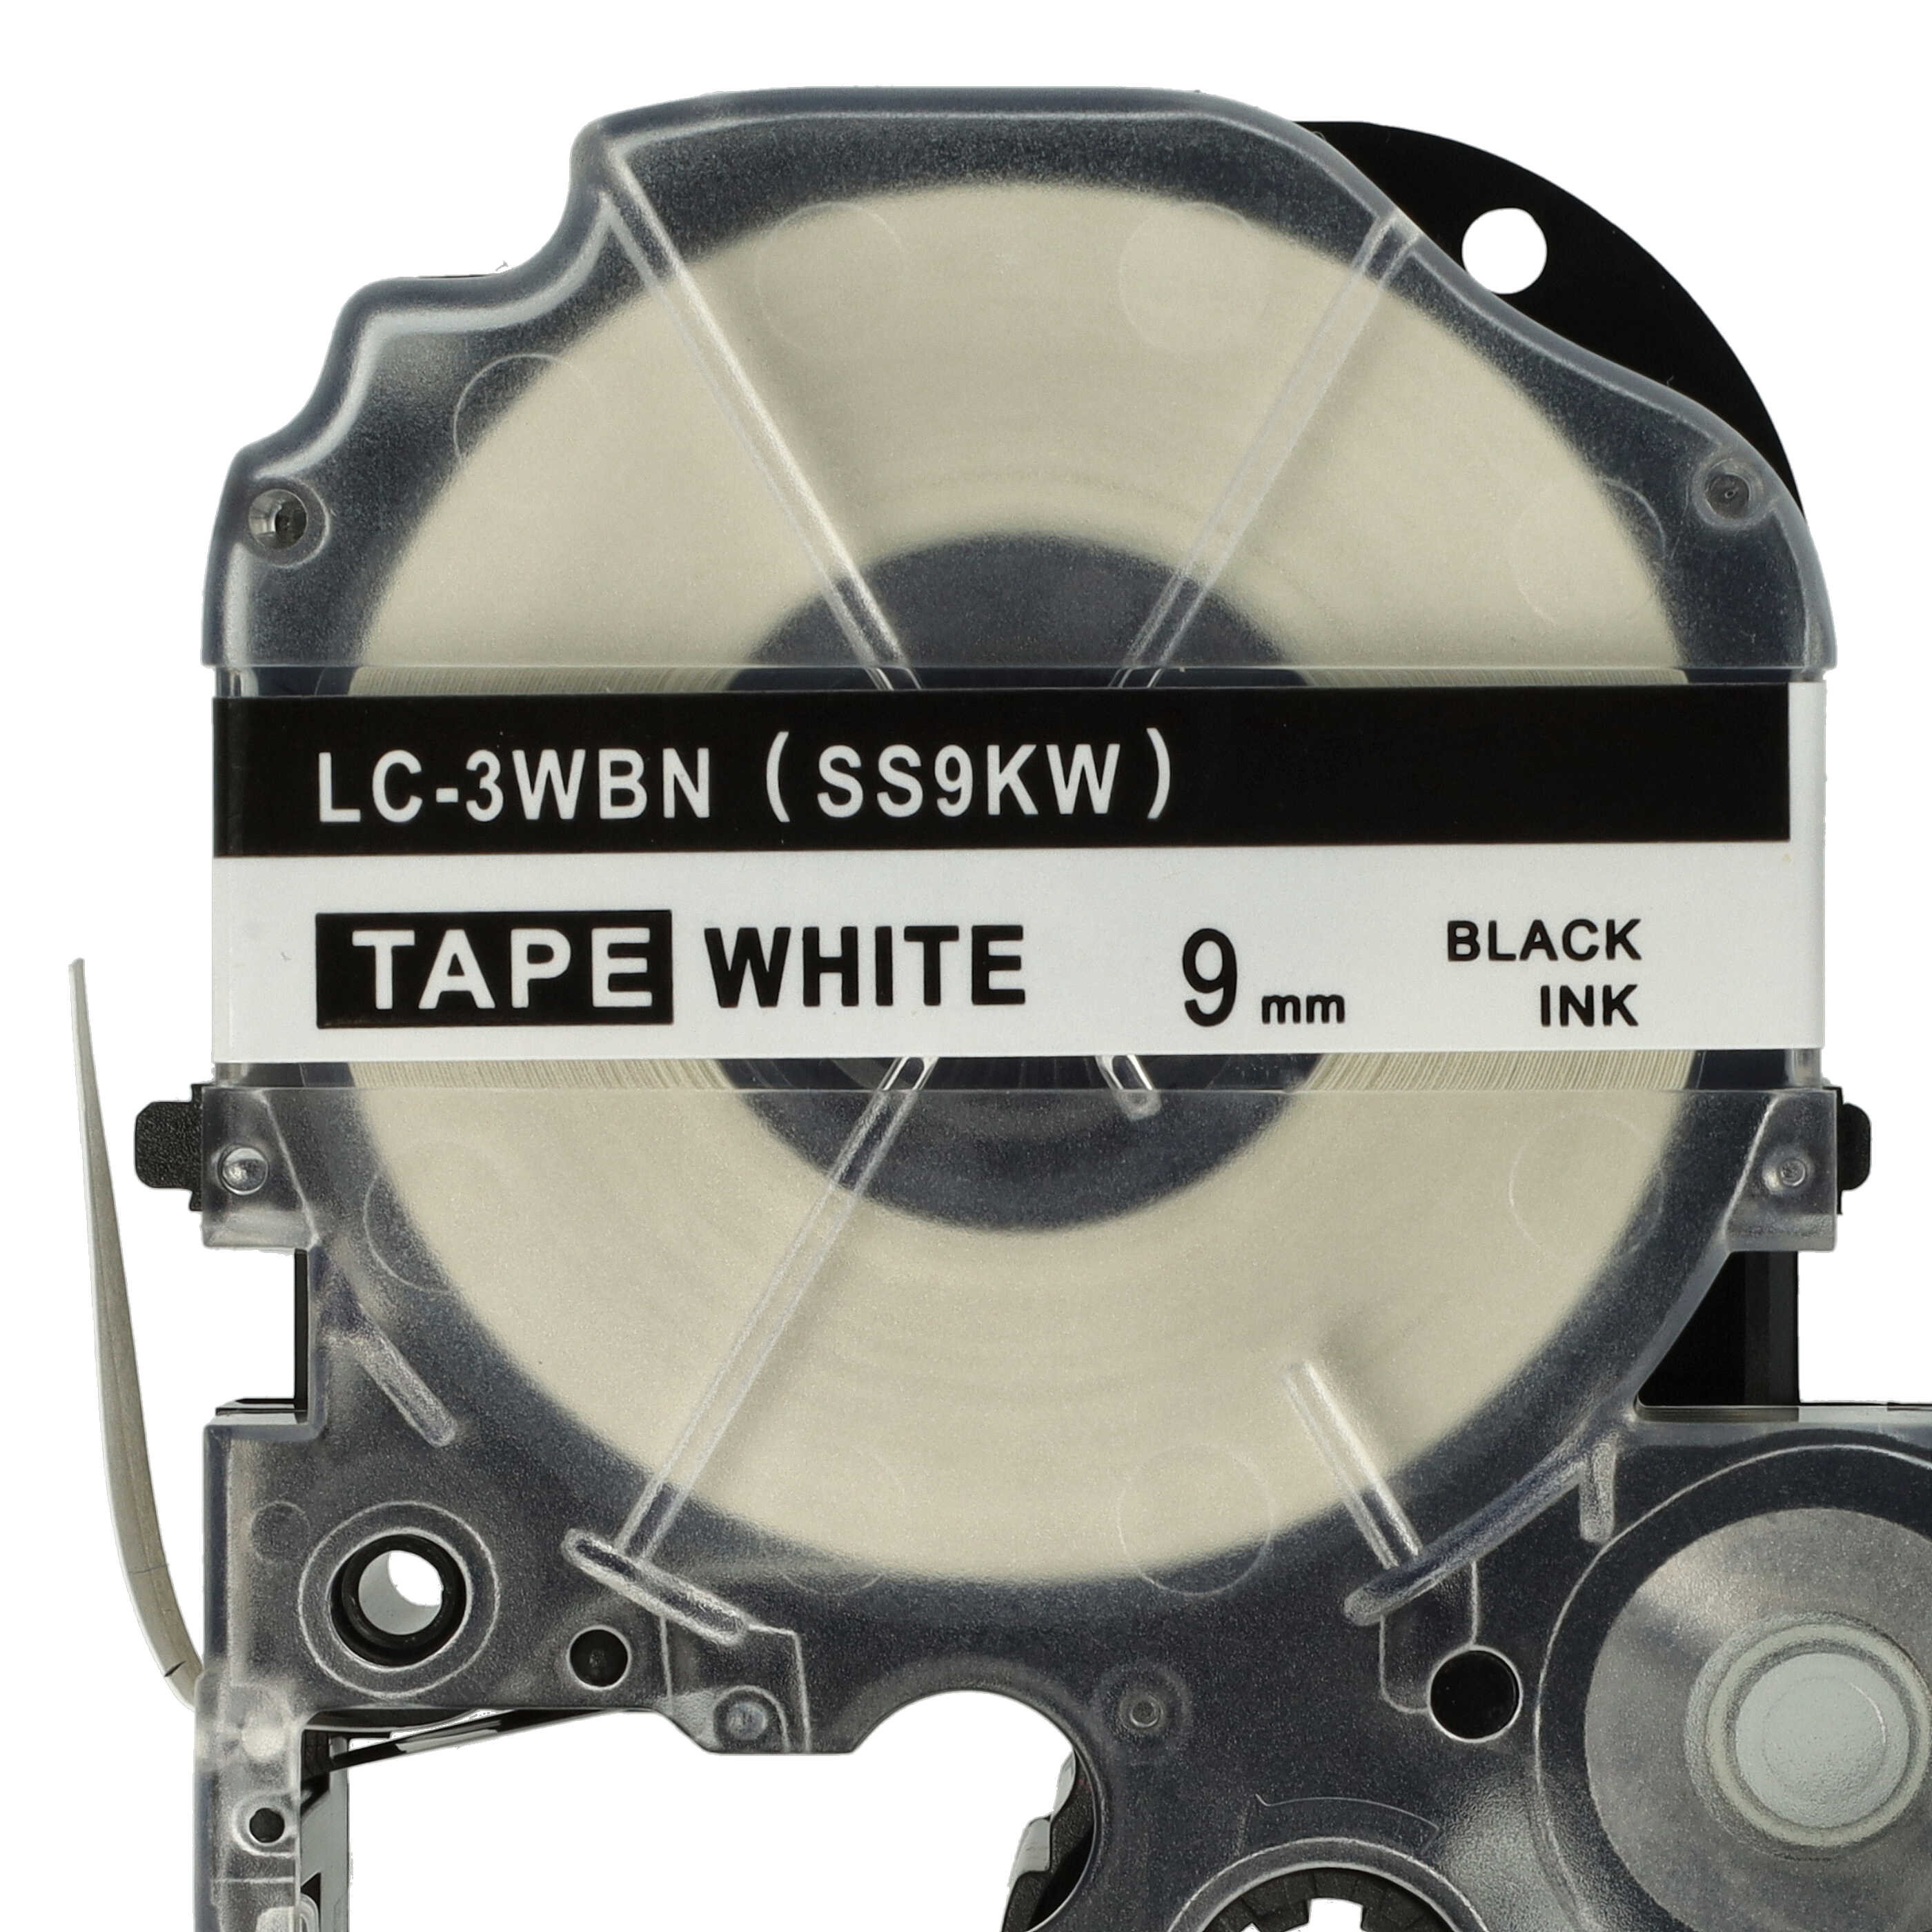 10x Cassetta nastro sostituisce Epson SS9KW, LC-3WBN per etichettatrice Epson 9mm nero su bianco